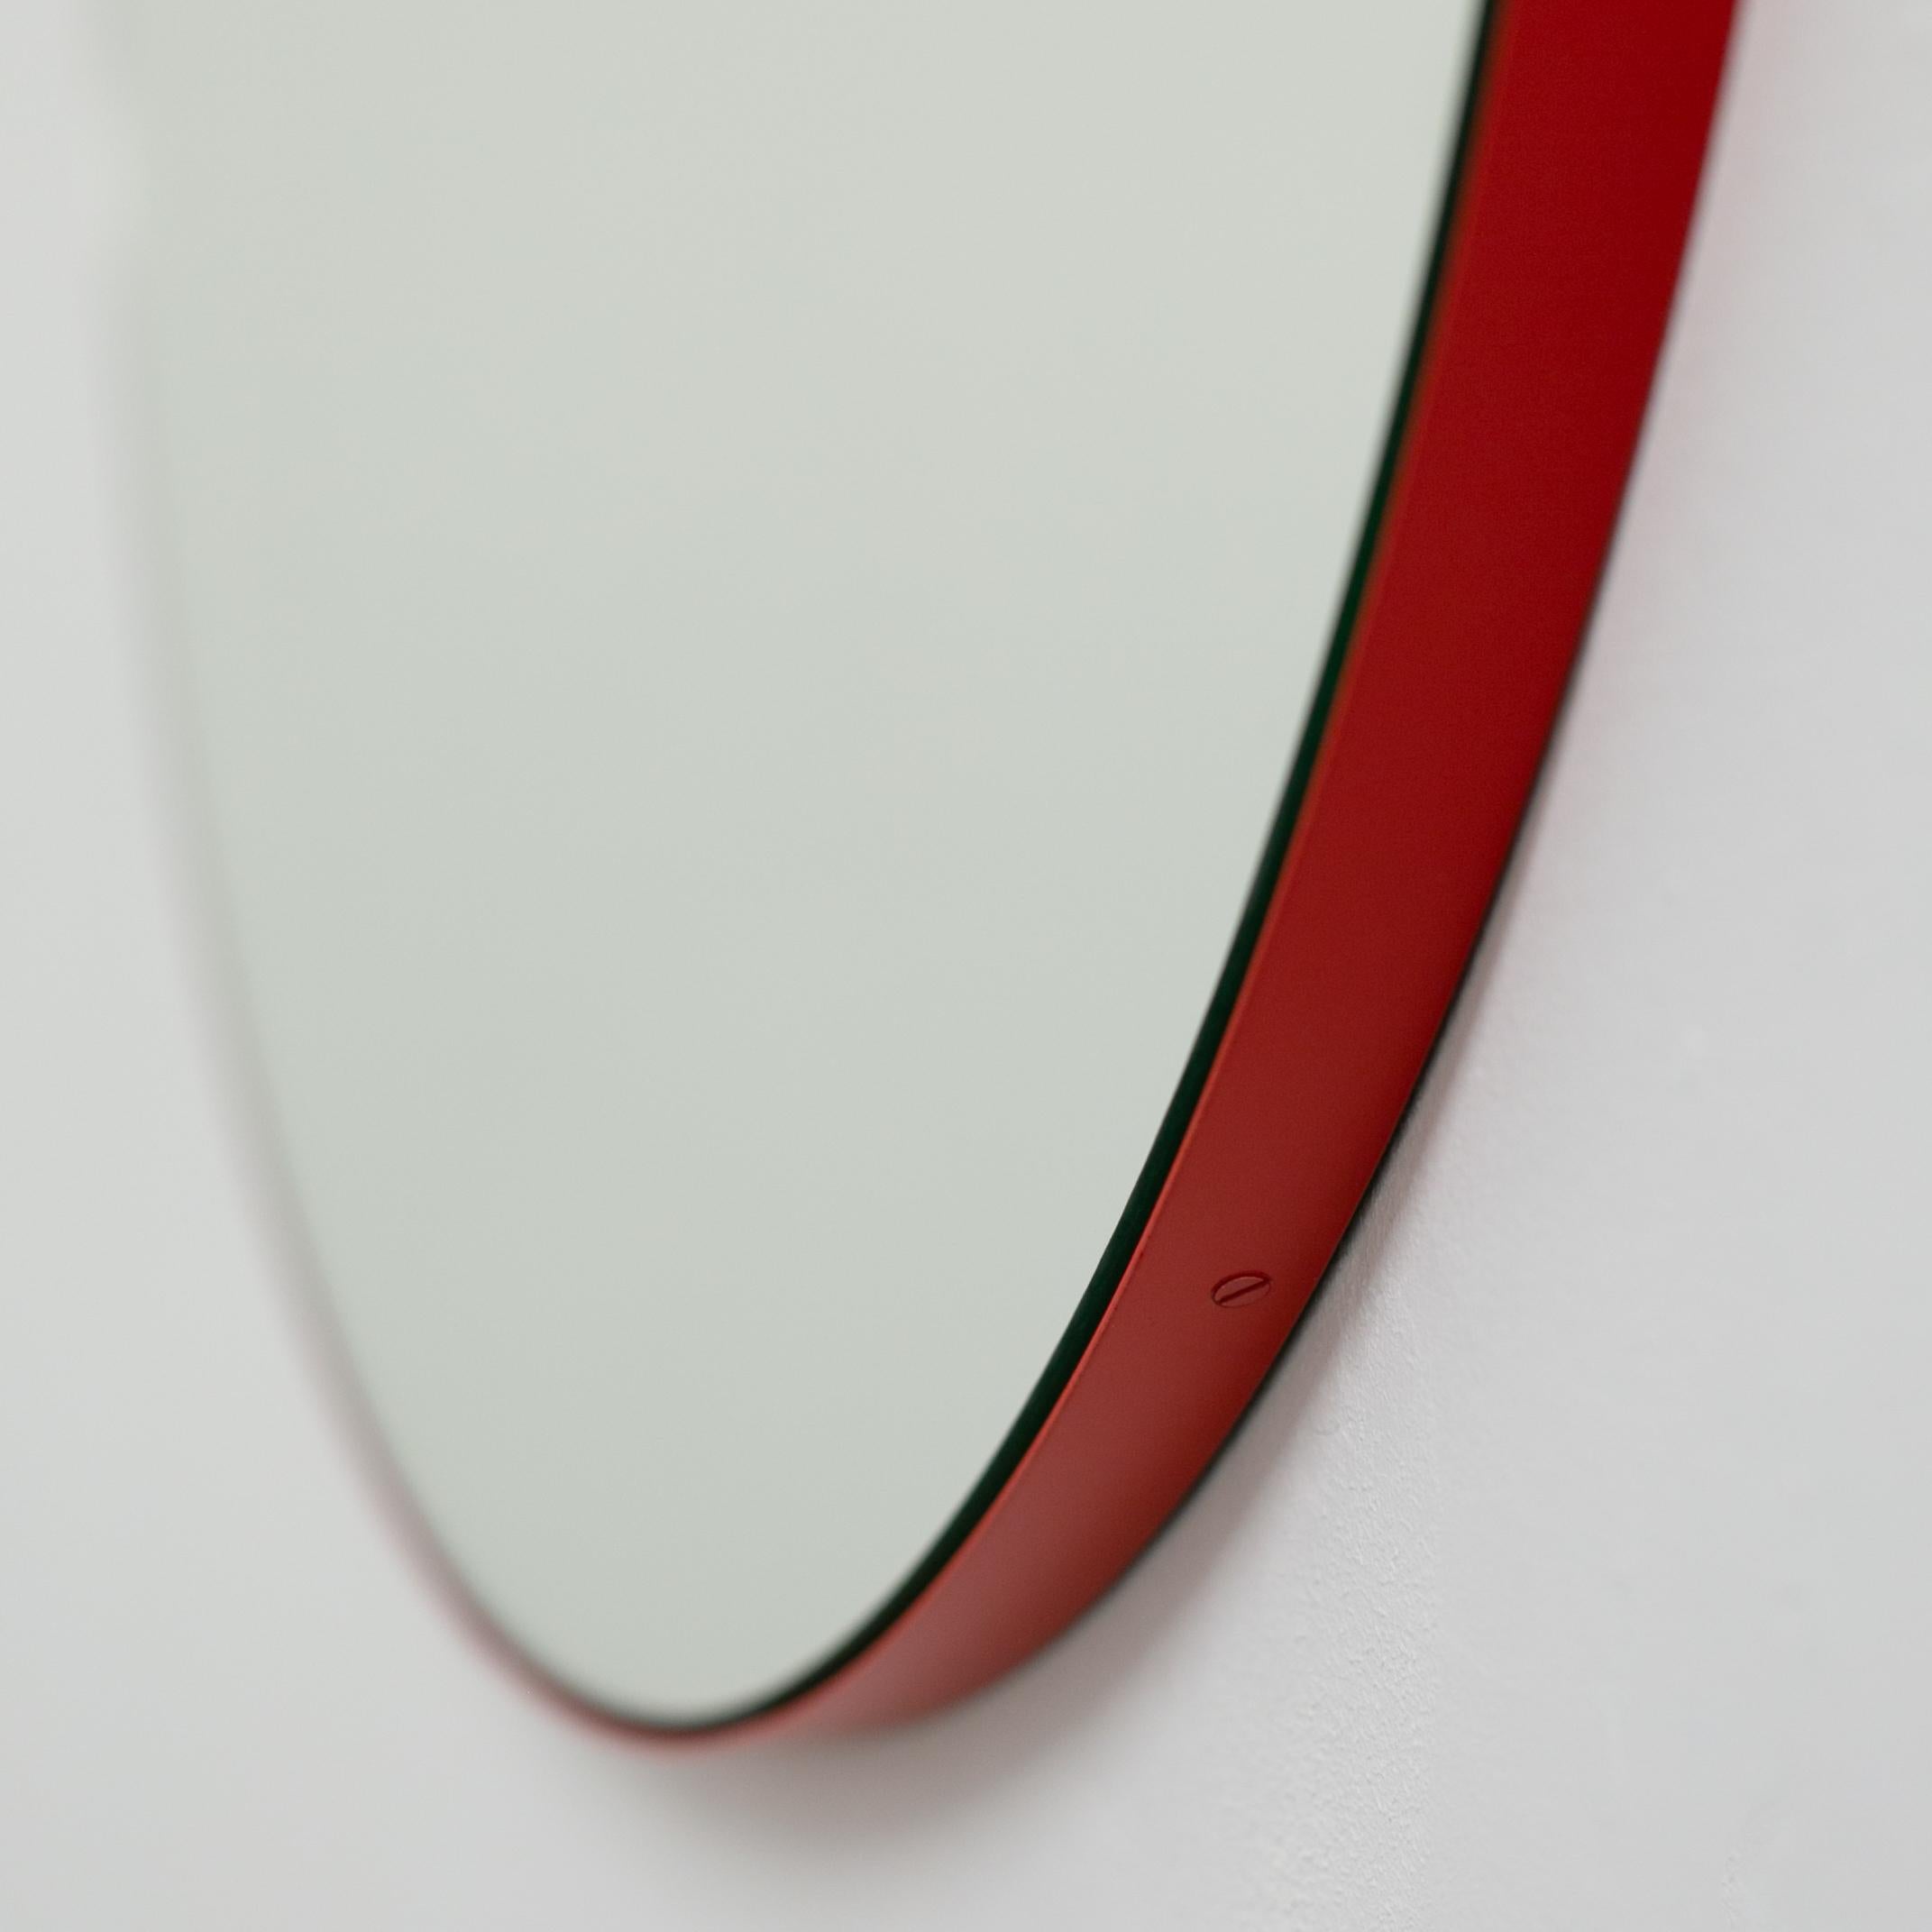 Miroir rond minimaliste avec un cadre moderne en aluminium peint par poudrage en rouge. Conçu et fabriqué à la main à Londres, au Royaume-Uni.

Nos miroirs sont conçus avec un système intégré de tasseaux français (lattes fendues) qui garantit que le